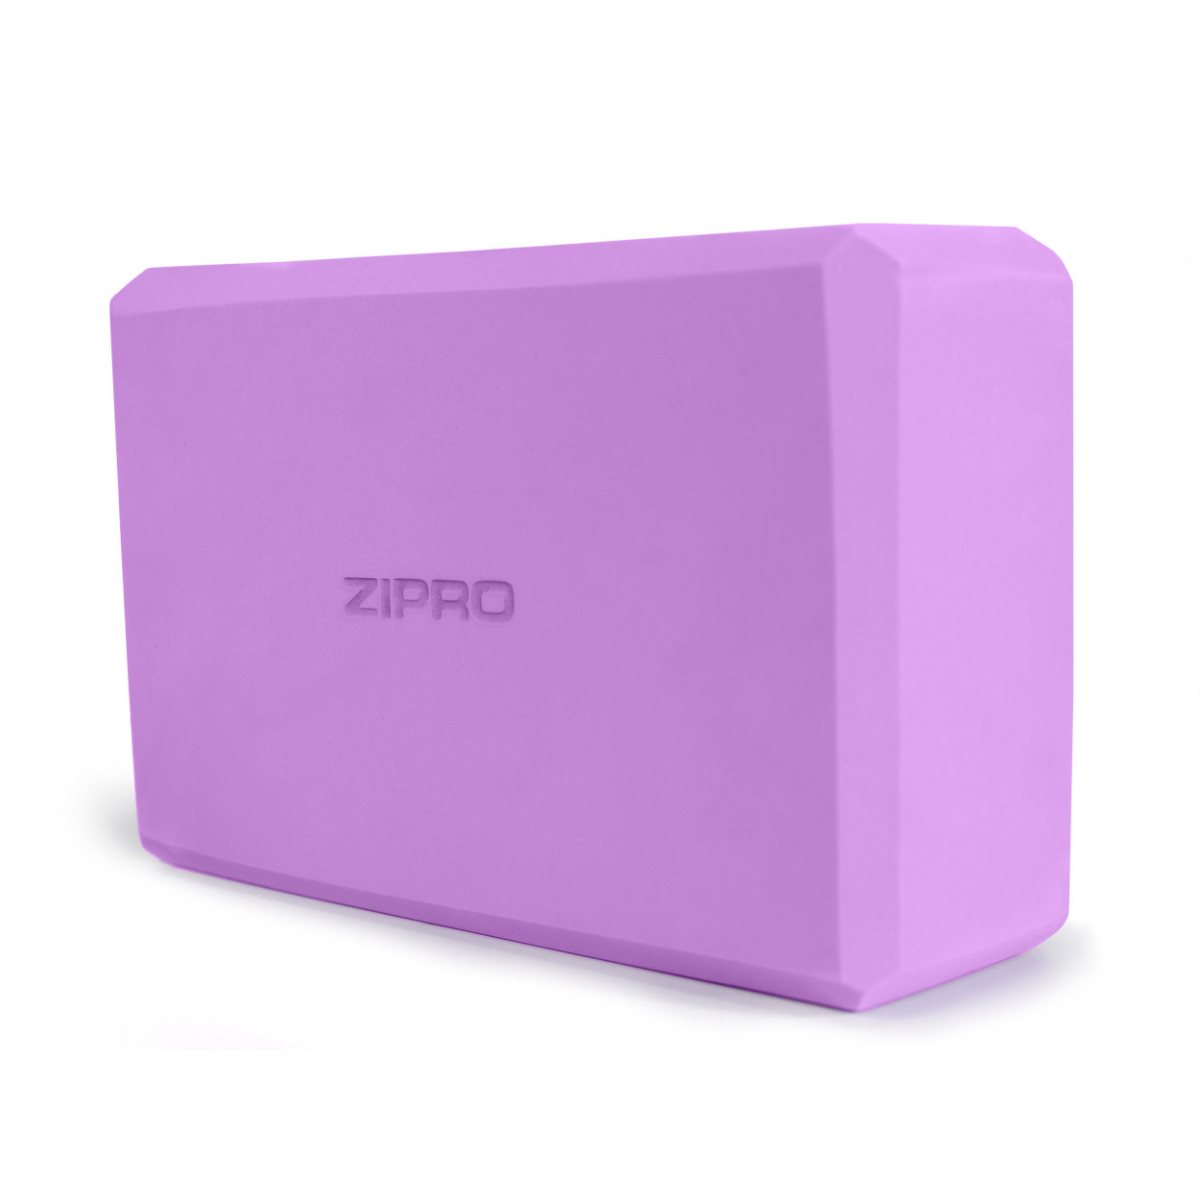 ZIPRO Yoga-Block Yoga-Block, Violett